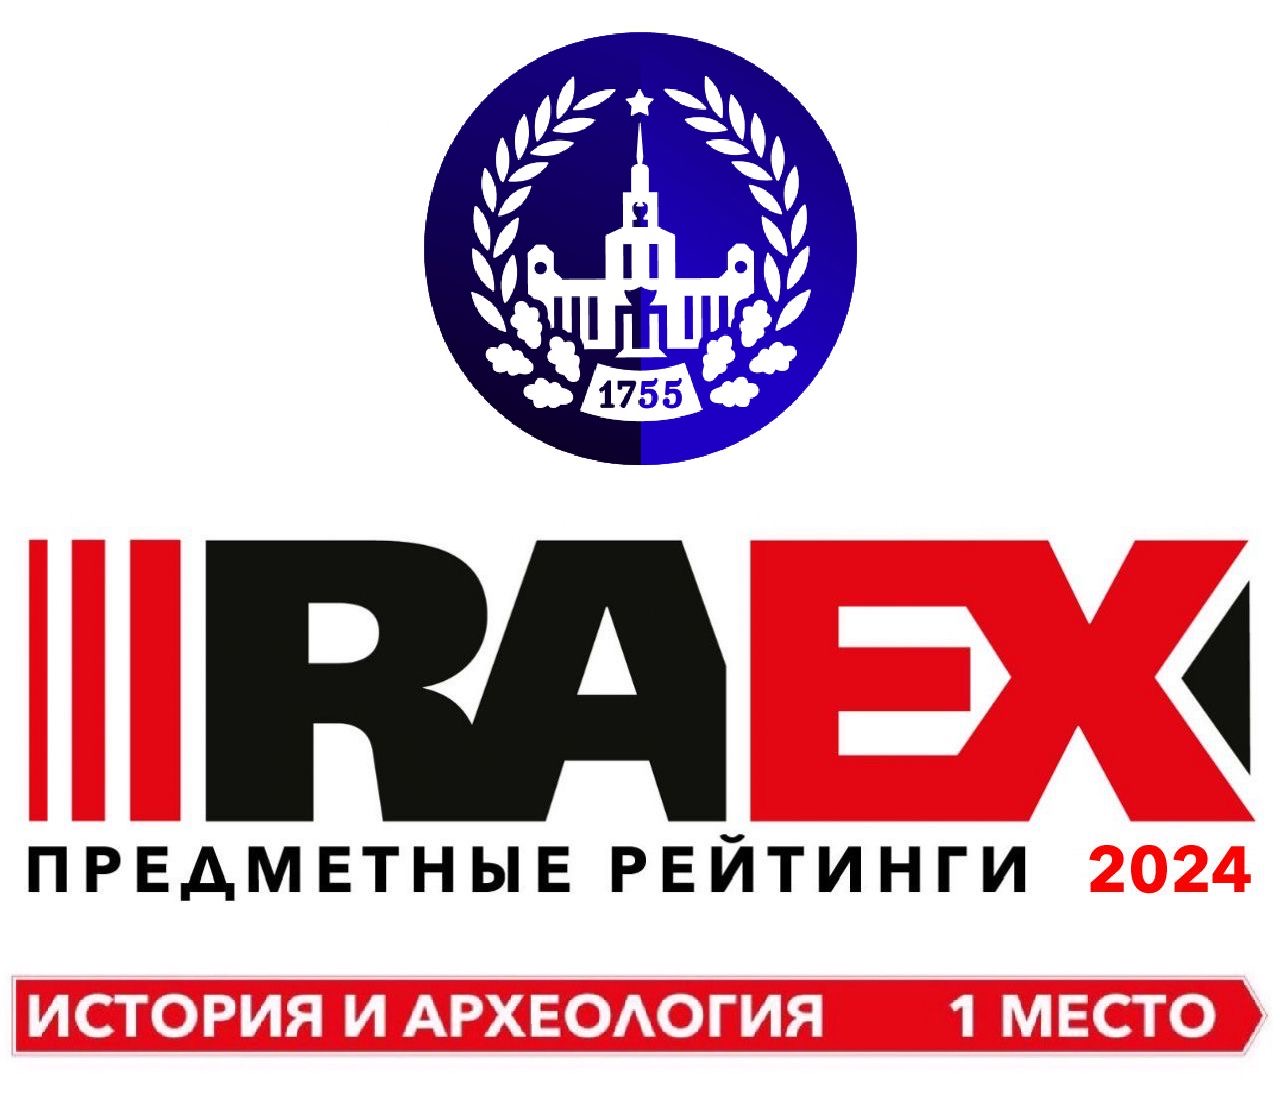 В 2024 году МГУ вновь занял первое место в предметном рейтинге "История и археология", составленном аналитиками RAEX